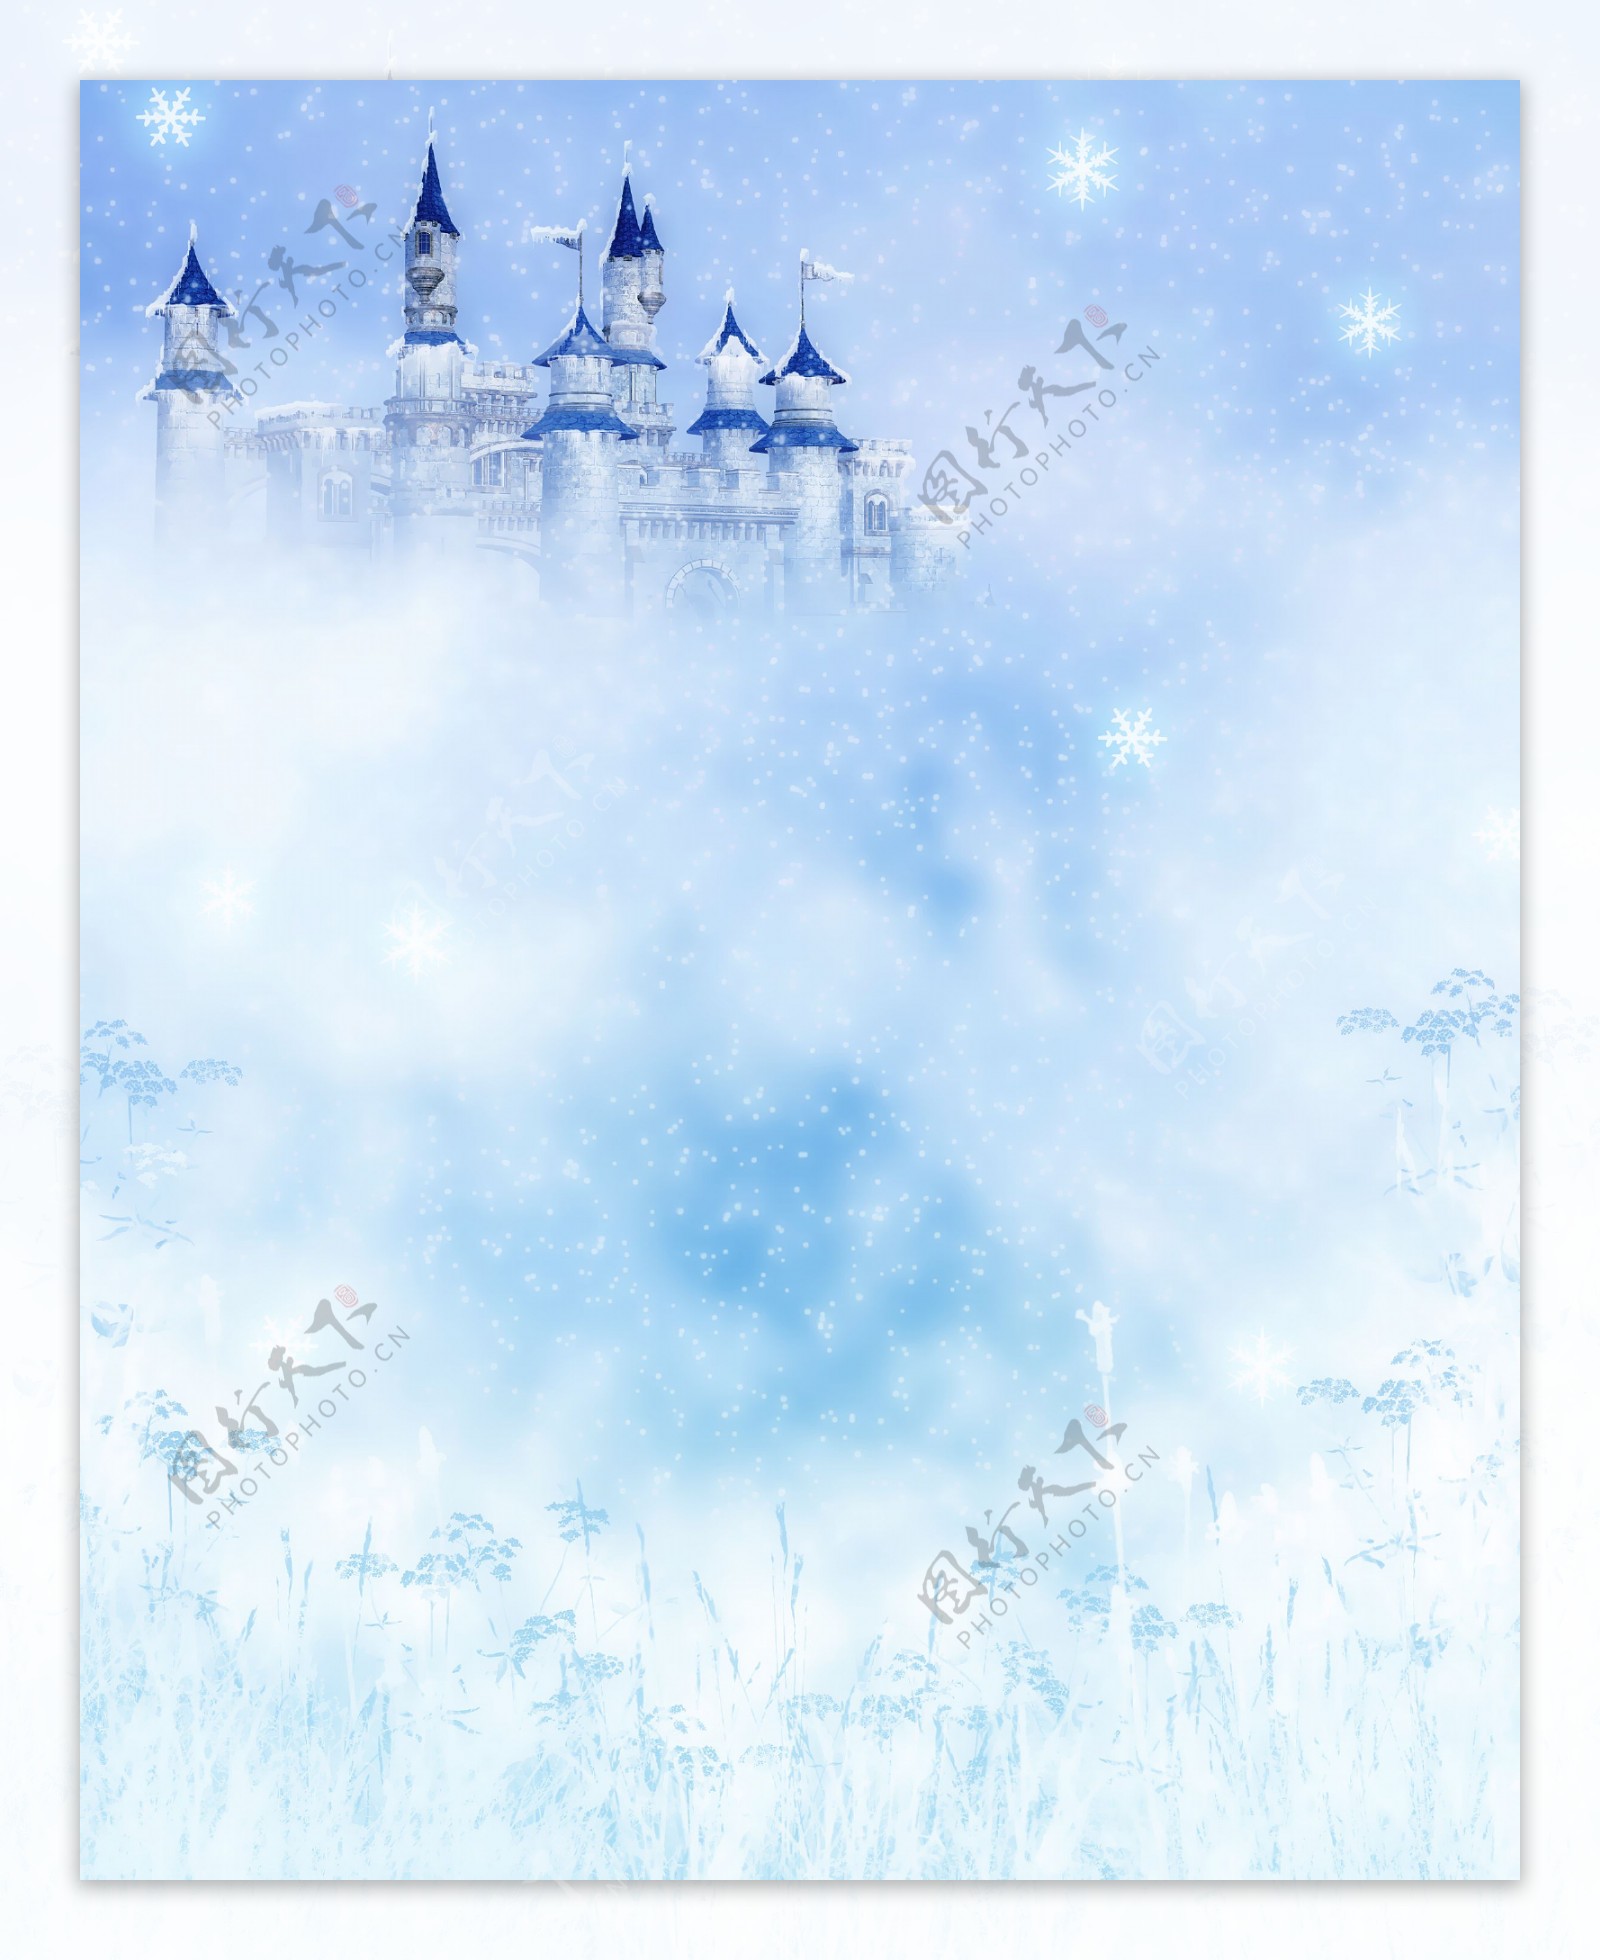 蓝色唯美城堡雪景